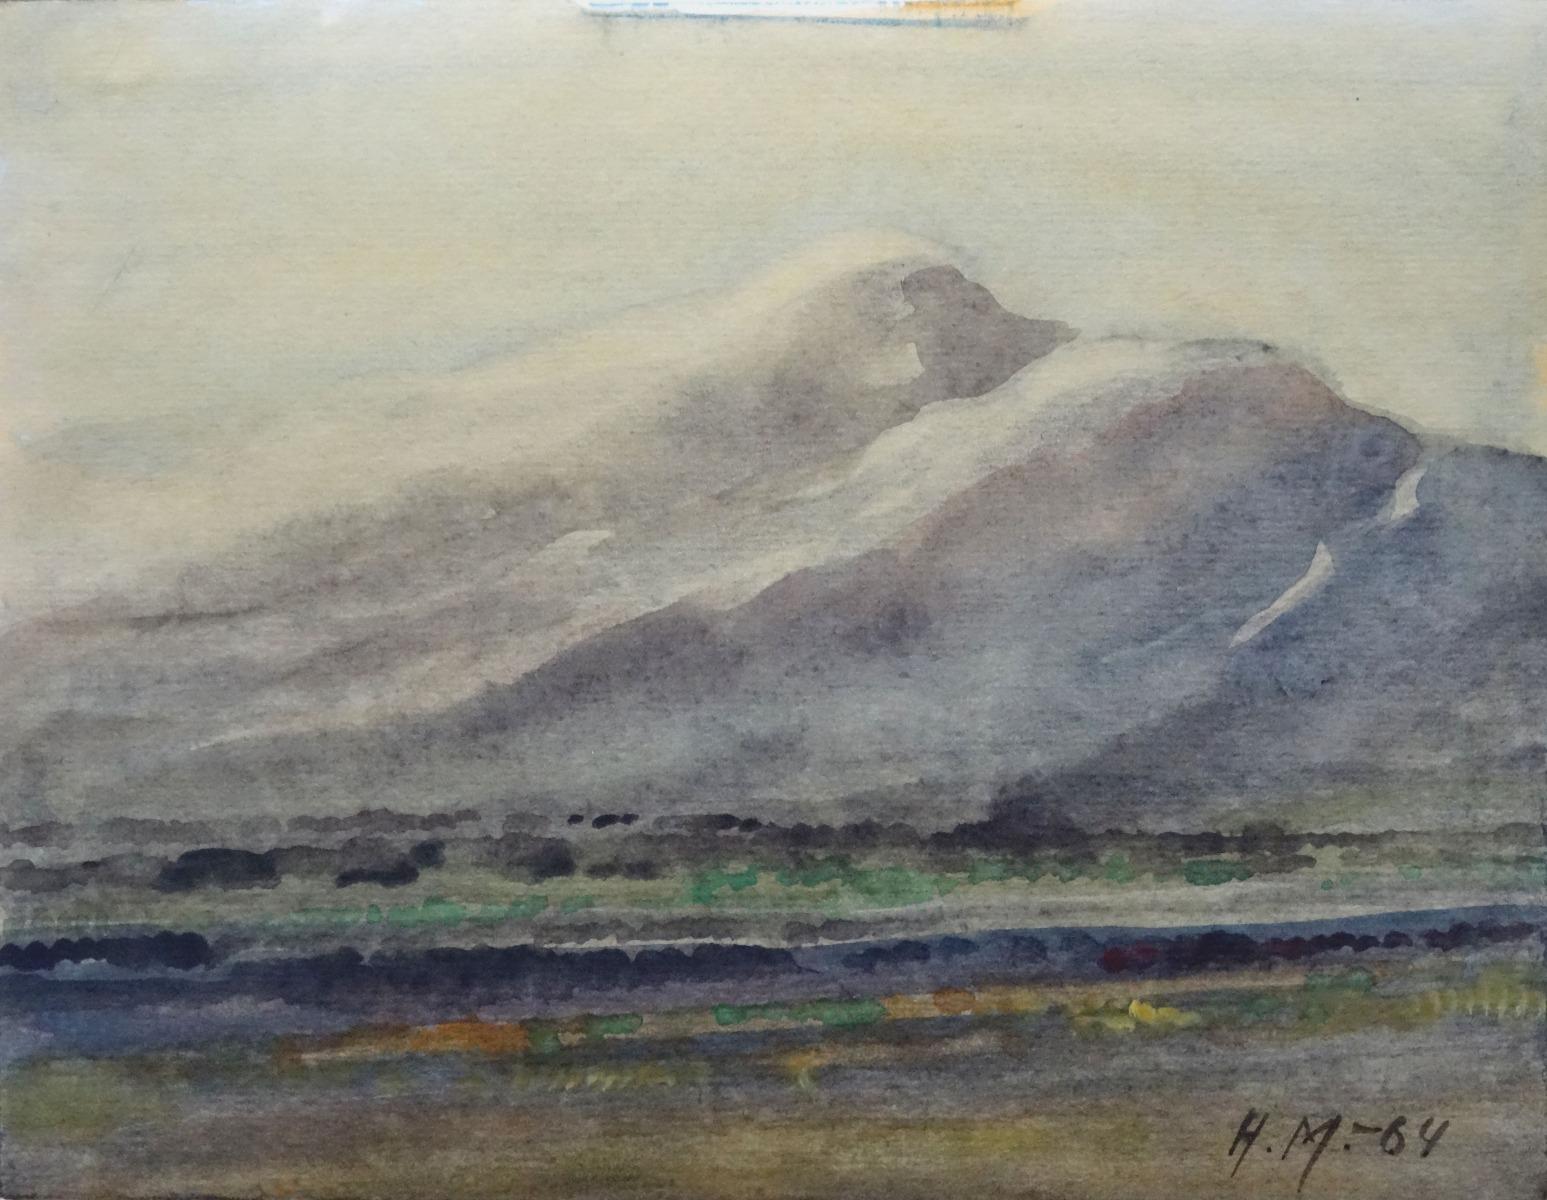 Herberts Mangolds Landscape Art – Landschaft  1964, Aquarell auf Papier, 20,5x26,5 cm